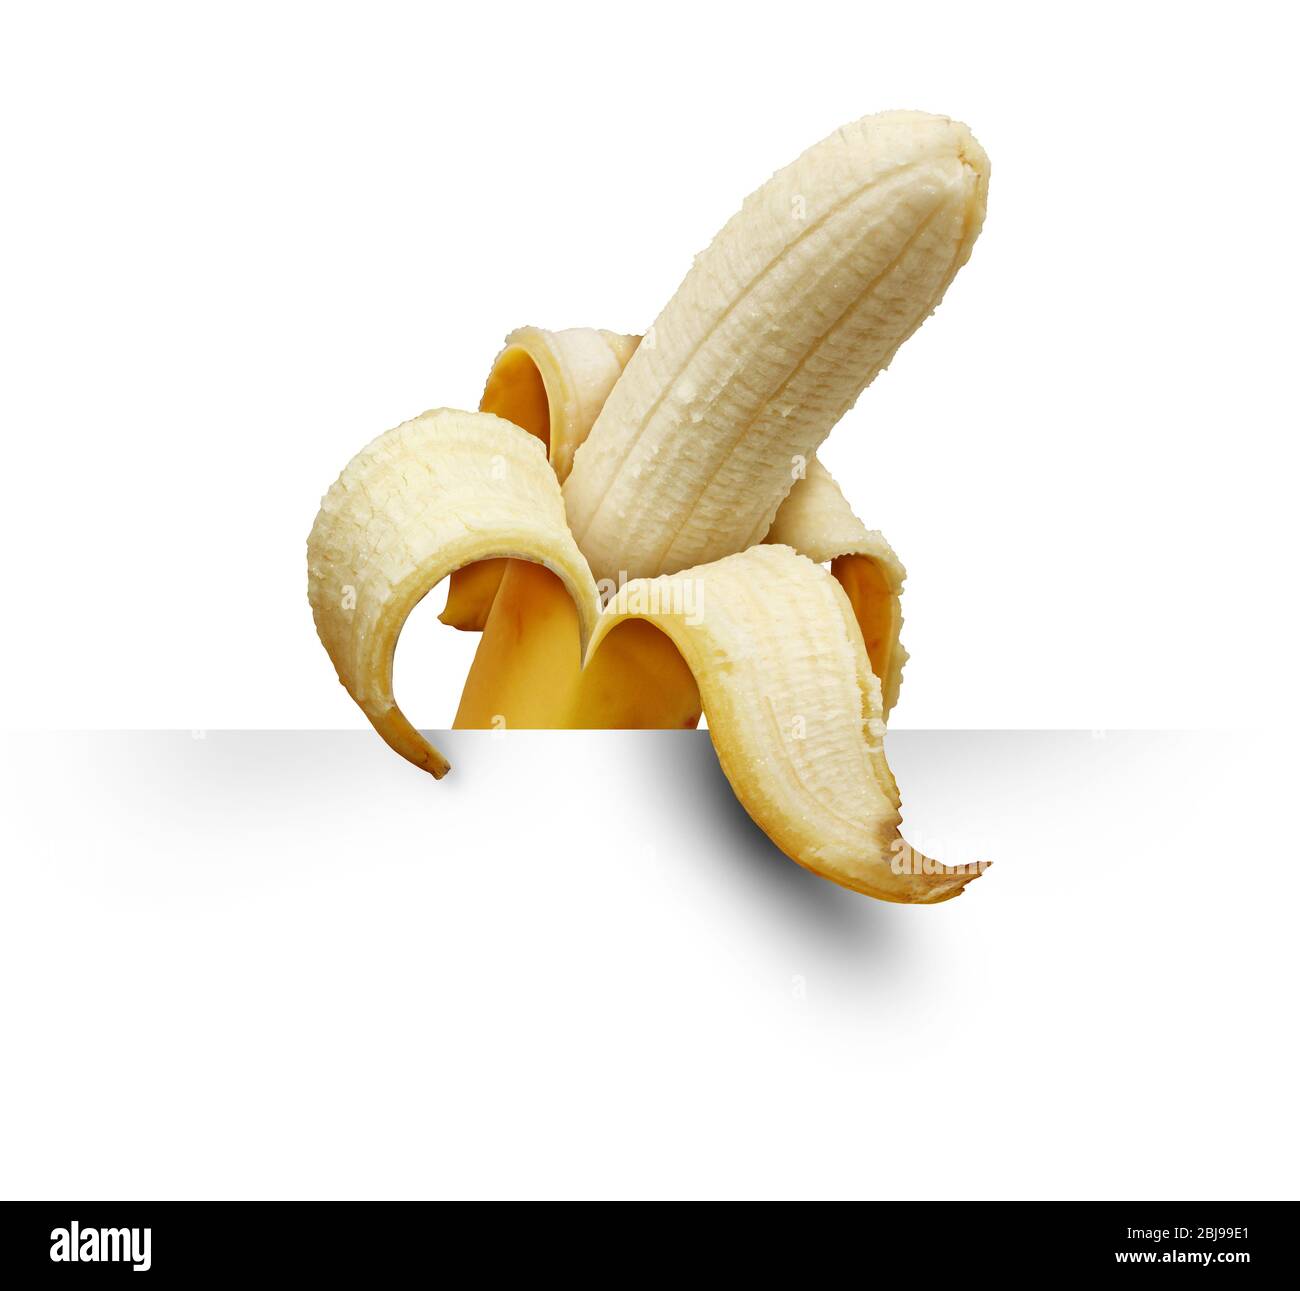 Bananenschild und tropische Früchte-Beschilderung als geschältes Bananen-Symbol mit einem gelben Lebensmittel-Element. Stockfoto